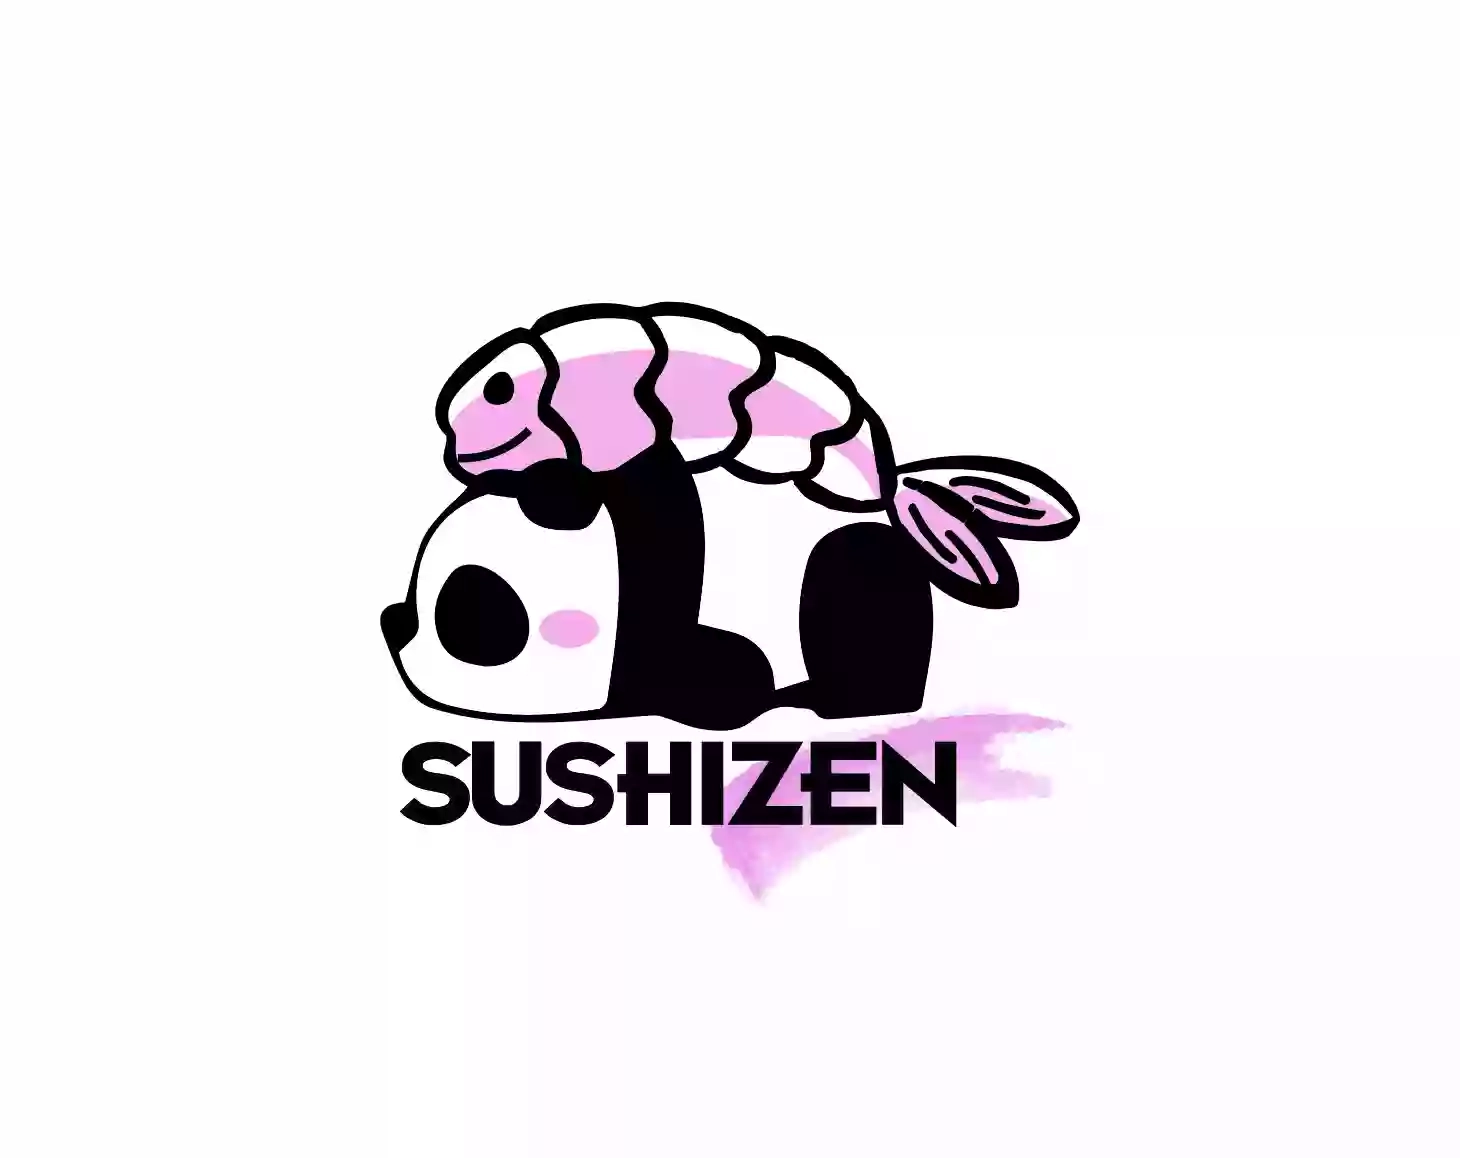 Sushi ZEN